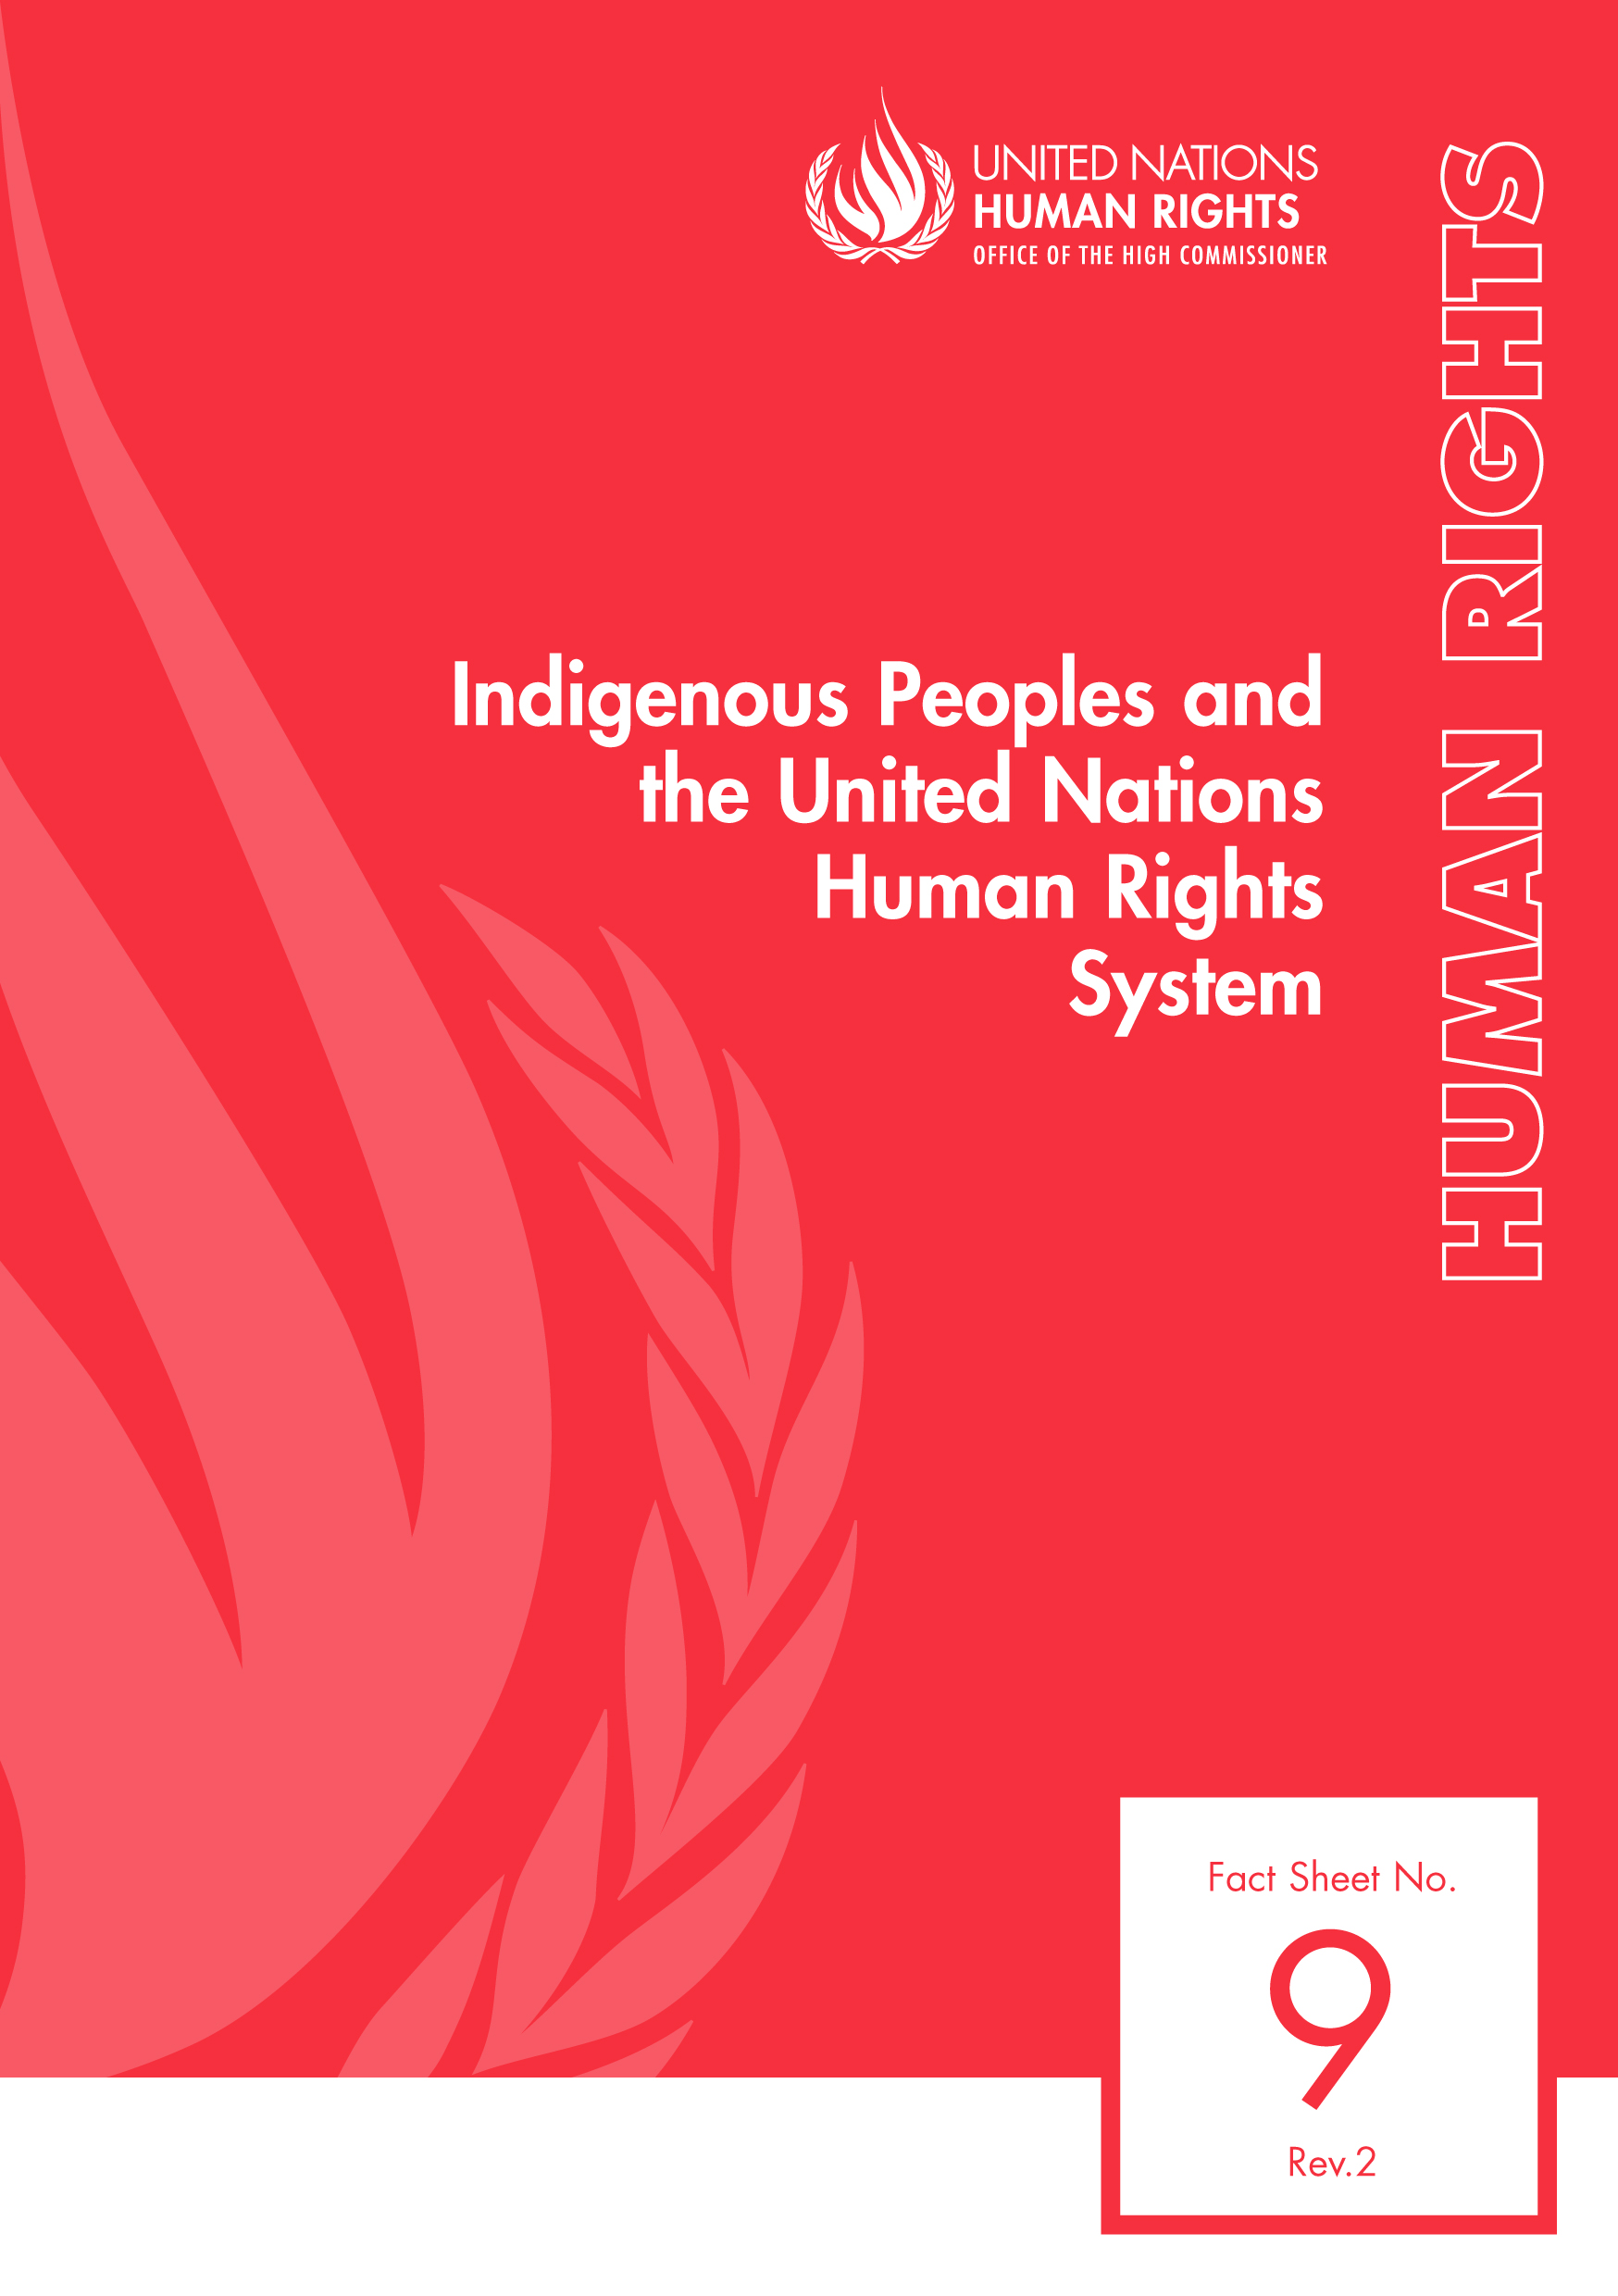 image of Human Rights Fact Sheet No. 9, Rev. 2